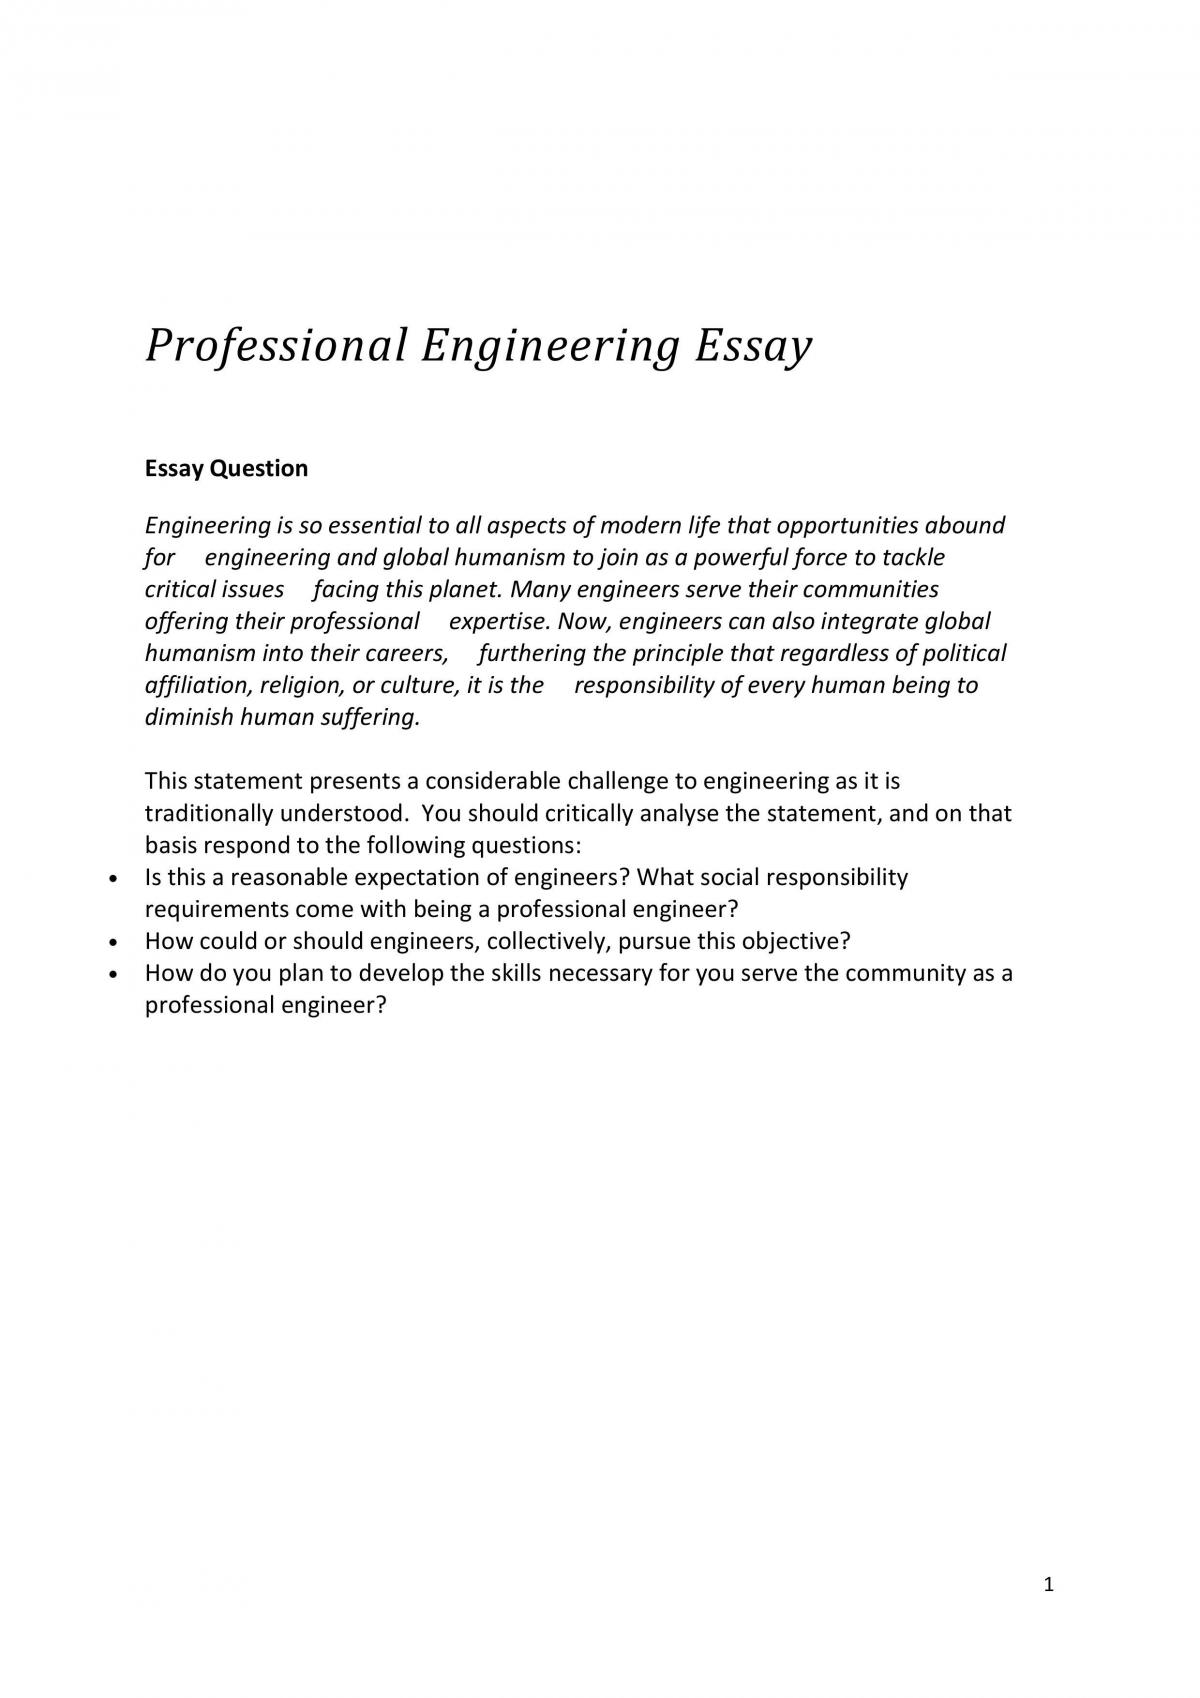 cornell engineering essay